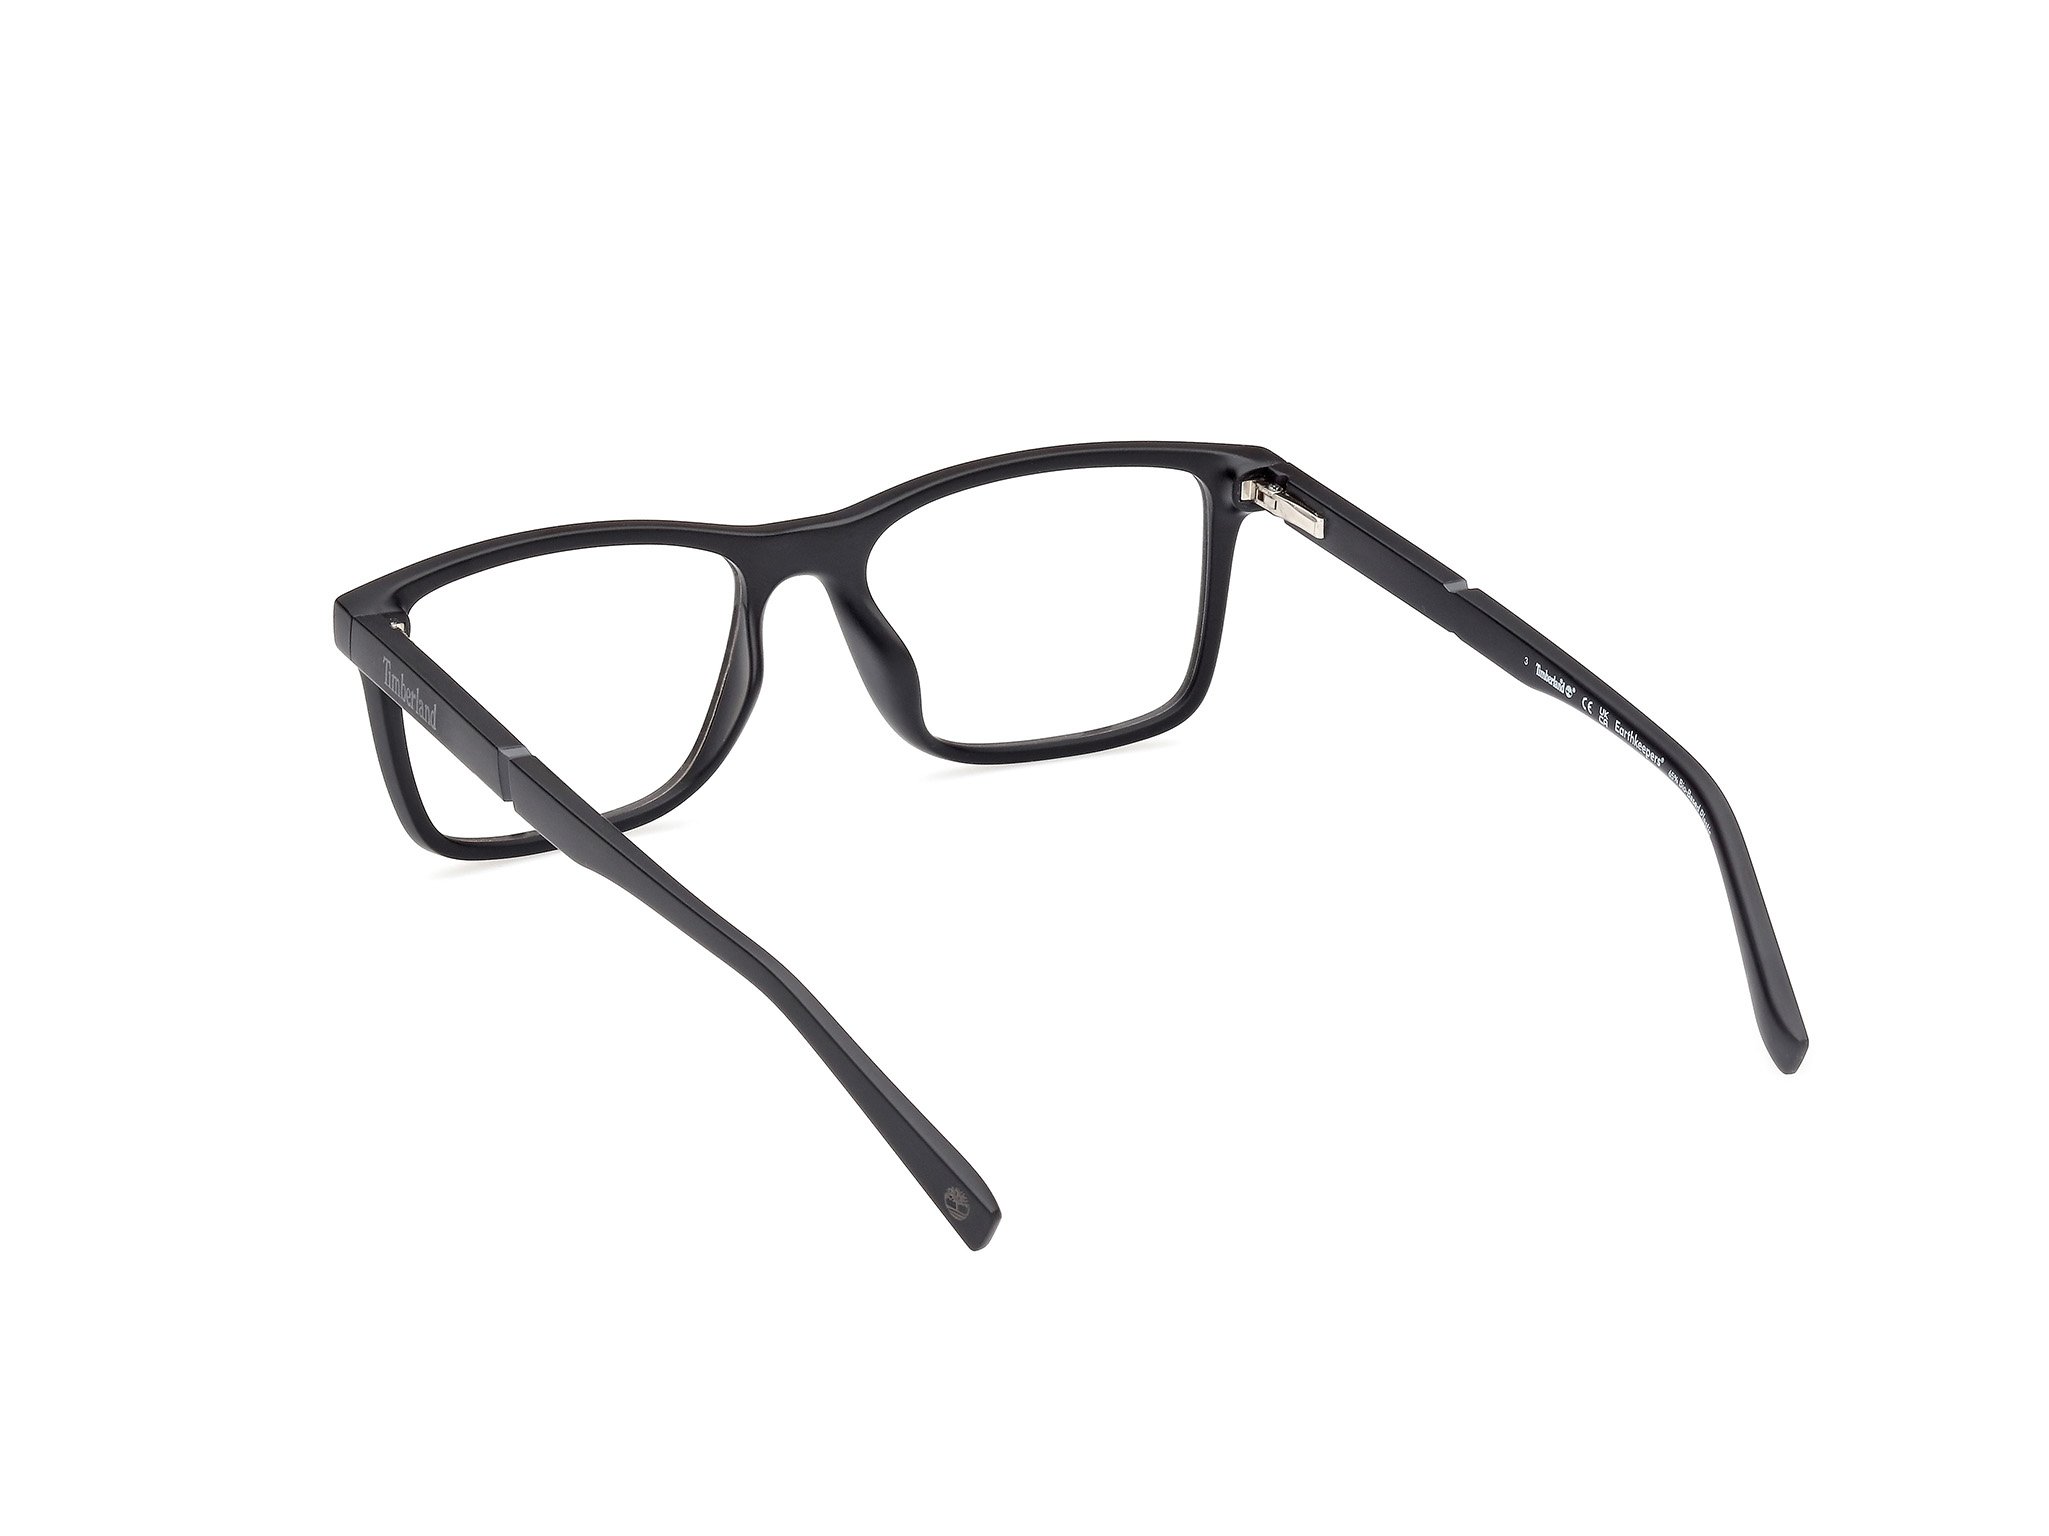 Das Bild zeigt die Korrektionsbrille TB1840-H 002 von der Marke Timberland in matt schwarz.